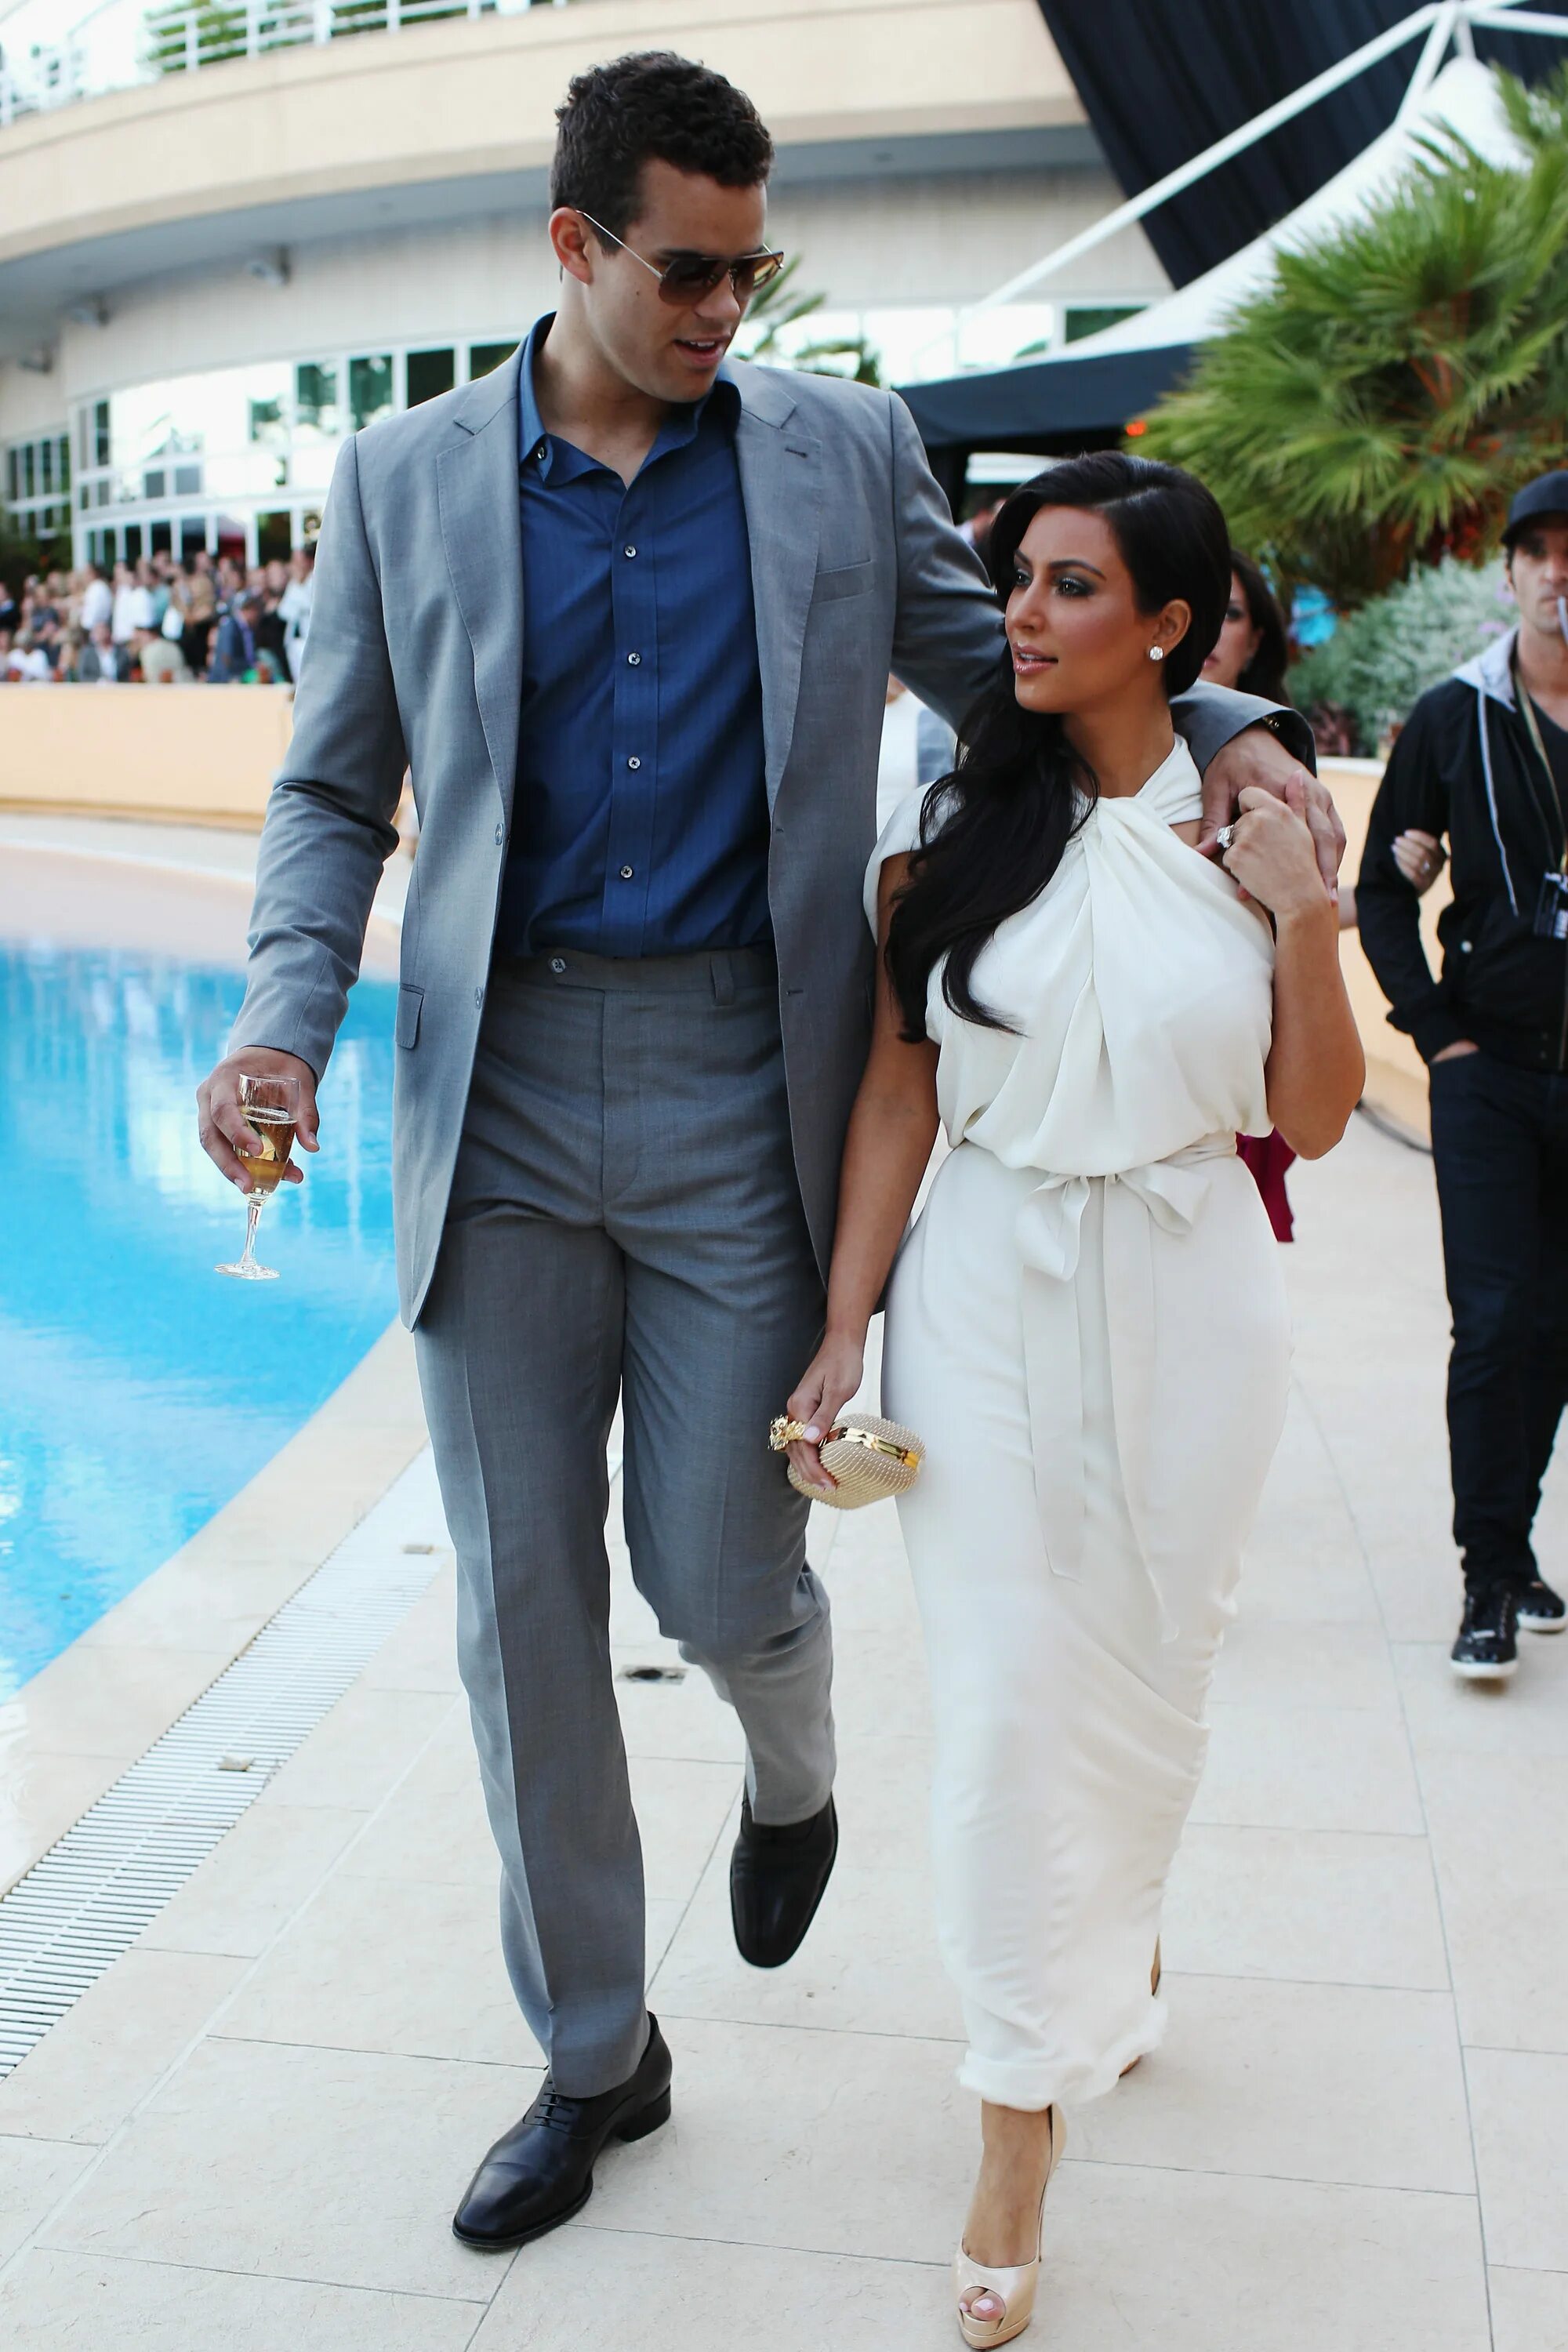 Муж меньше жены. Kim Kardashian and Kris Humphries. Жених Ким Кардашян. Высокий парень. Высокая женщина и низкий мужчина.